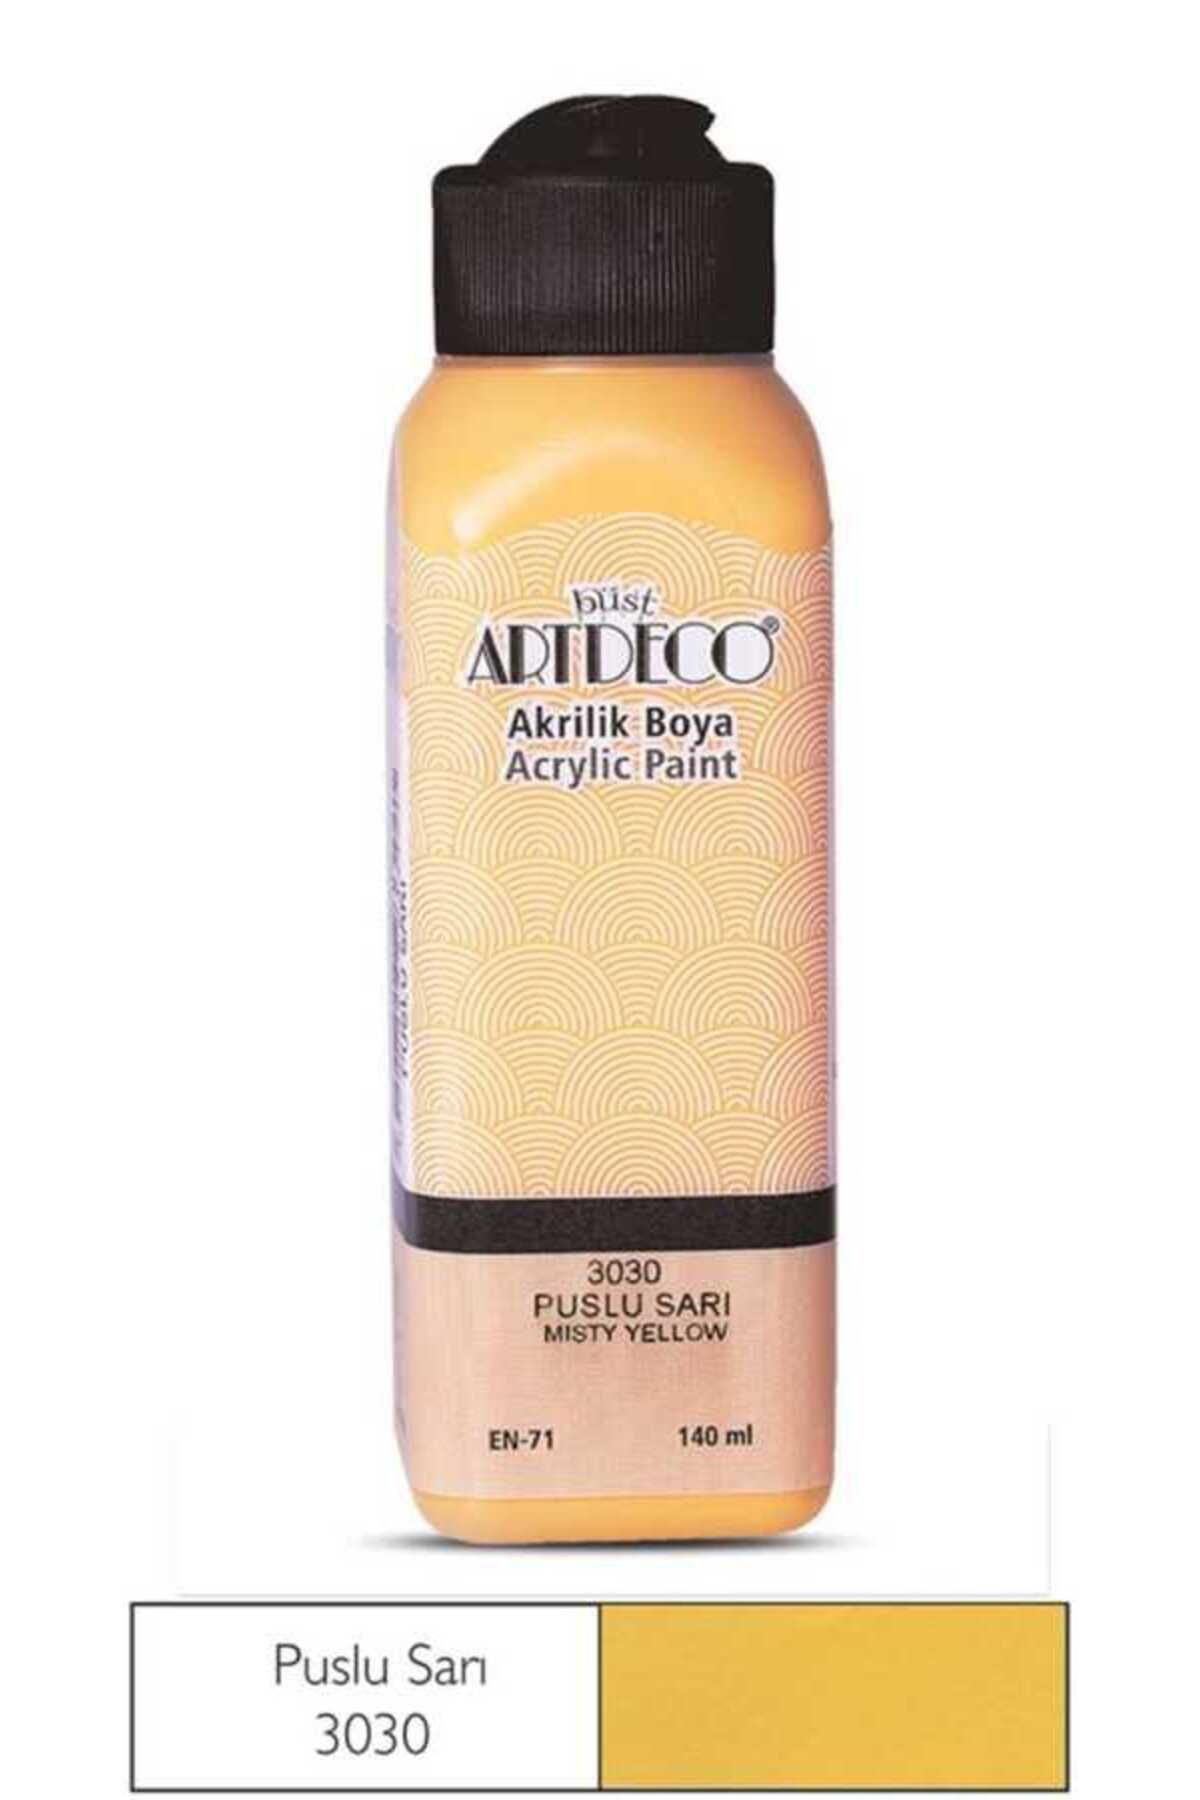 Artdeco Akrilik Boya 140 ml Puslu Sarı 3030